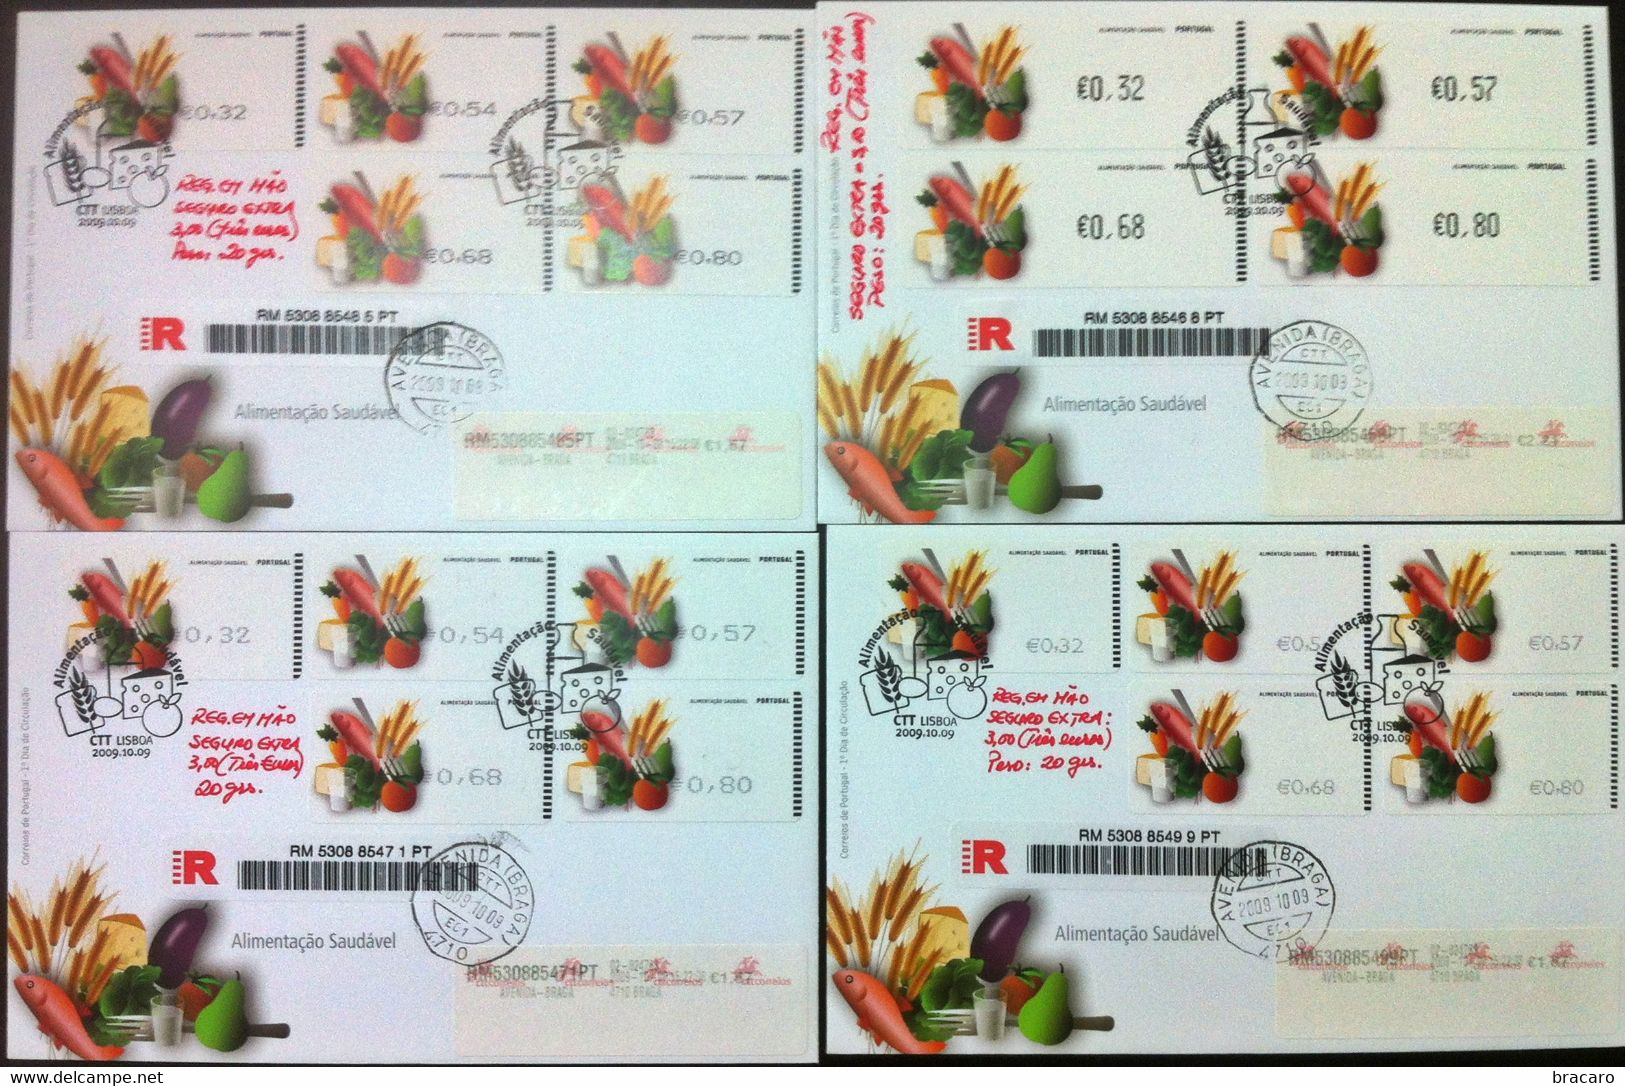 Portugal - ATM Machine Stamps - FDC (cover) X 4 - Alimentação Saudável 2009 - Registered, Cancel Braga - Máquinas Franqueo (EMA)